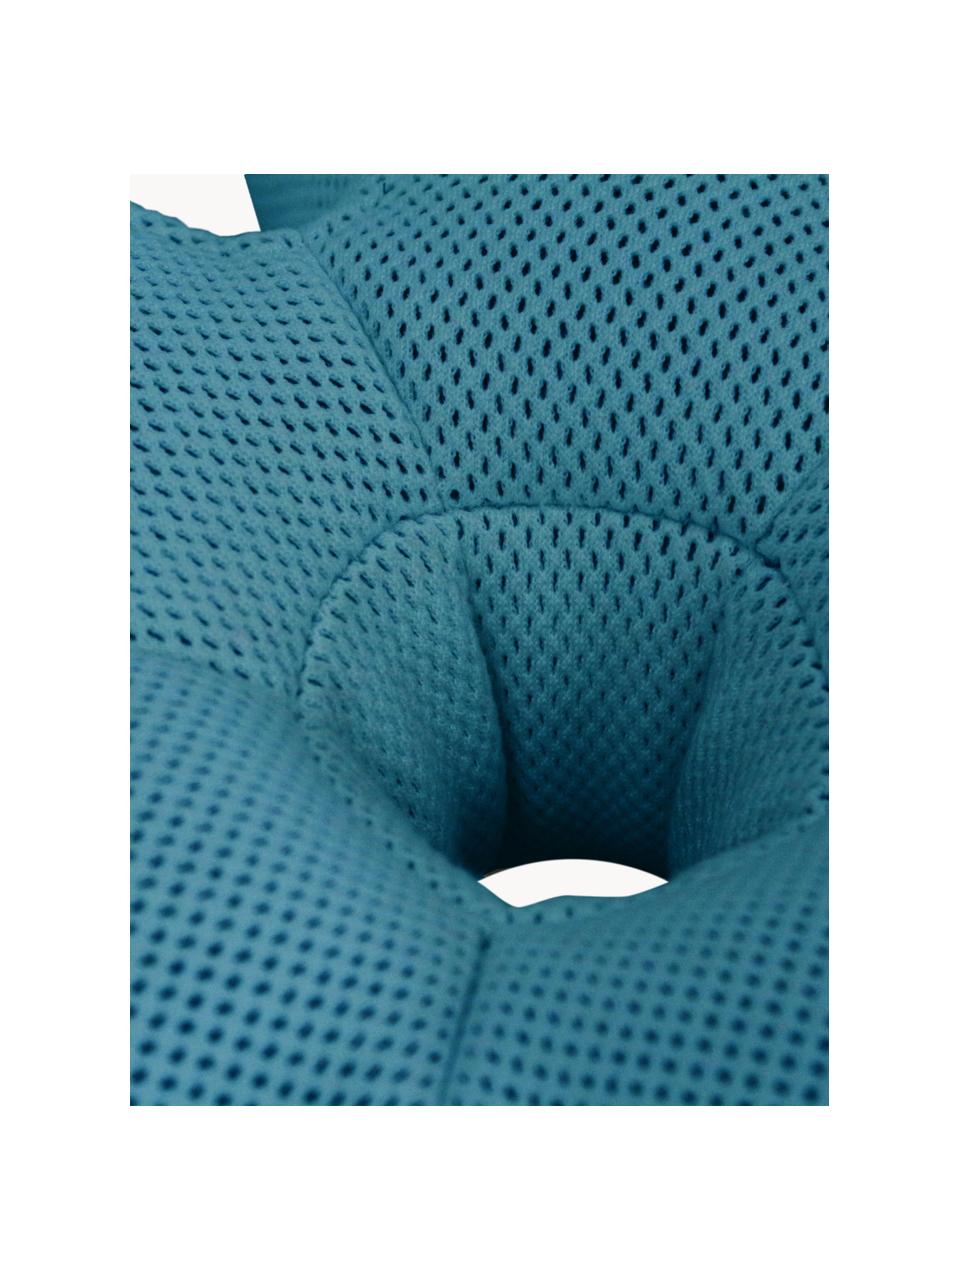 Ręcznie wykonany zewnętrzny worek do siedzenia Flower, Tapicerka: 70% PAN + 30% PES, wodood, Petrol, Ø 72 x W 17 cm